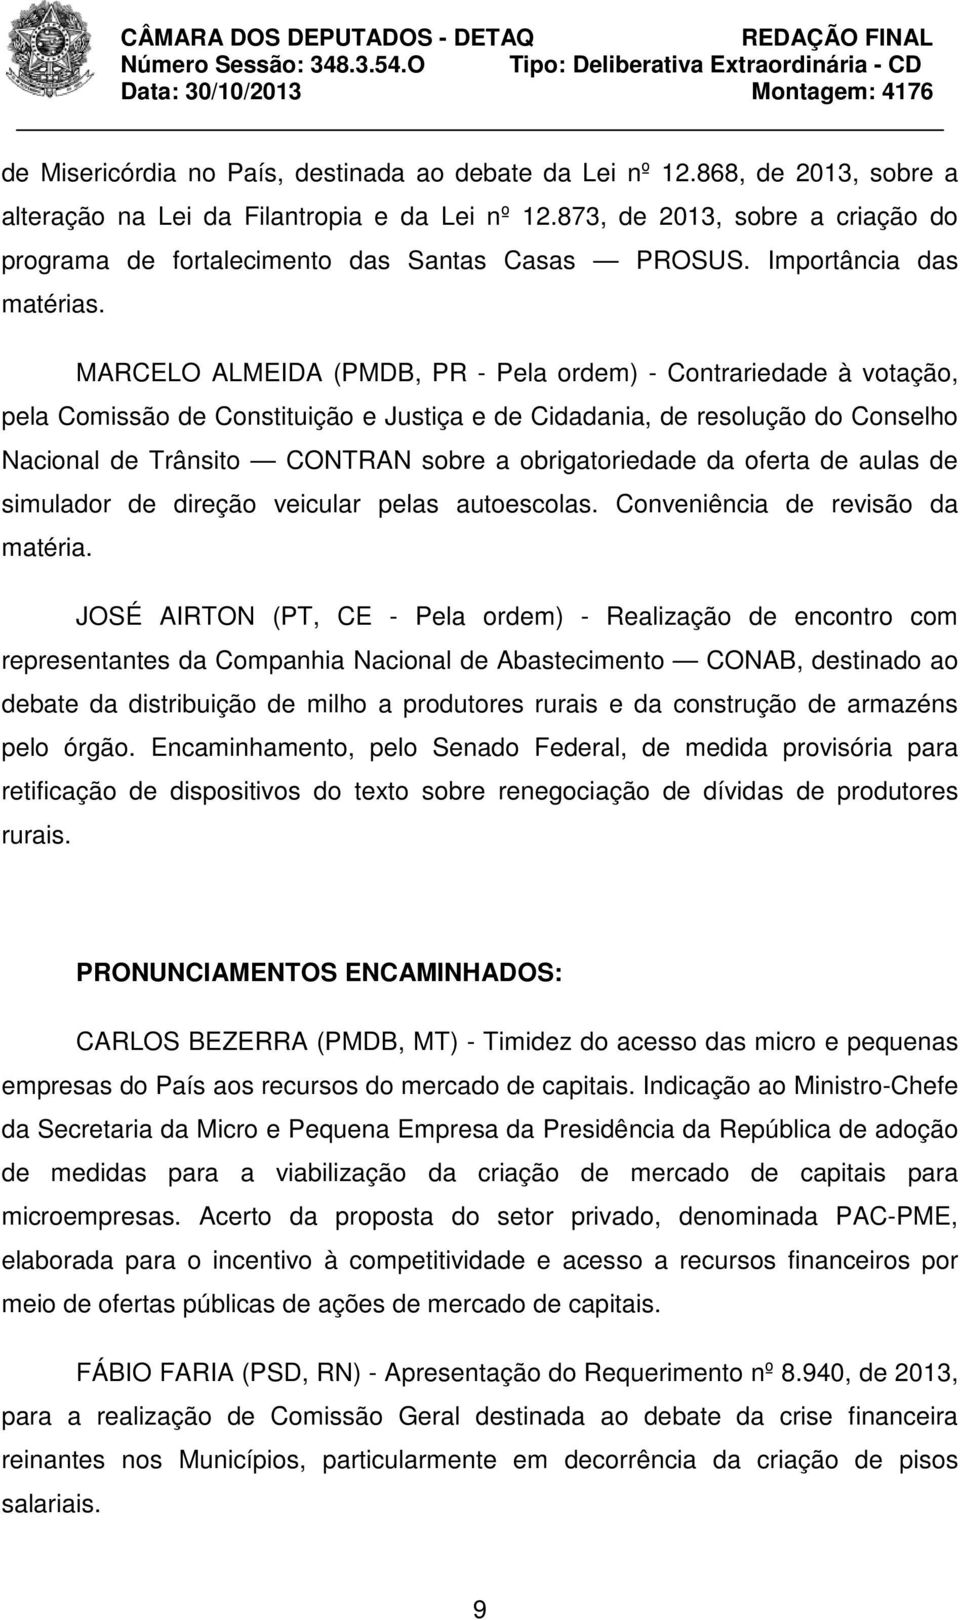 MARCELO ALMEIDA (PMDB, PR - Pela ordem) - Contrariedade à votação, pela Comissão de Constituição e Justiça e de Cidadania, de resolução do Conselho Nacional de Trânsito CONTRAN sobre a